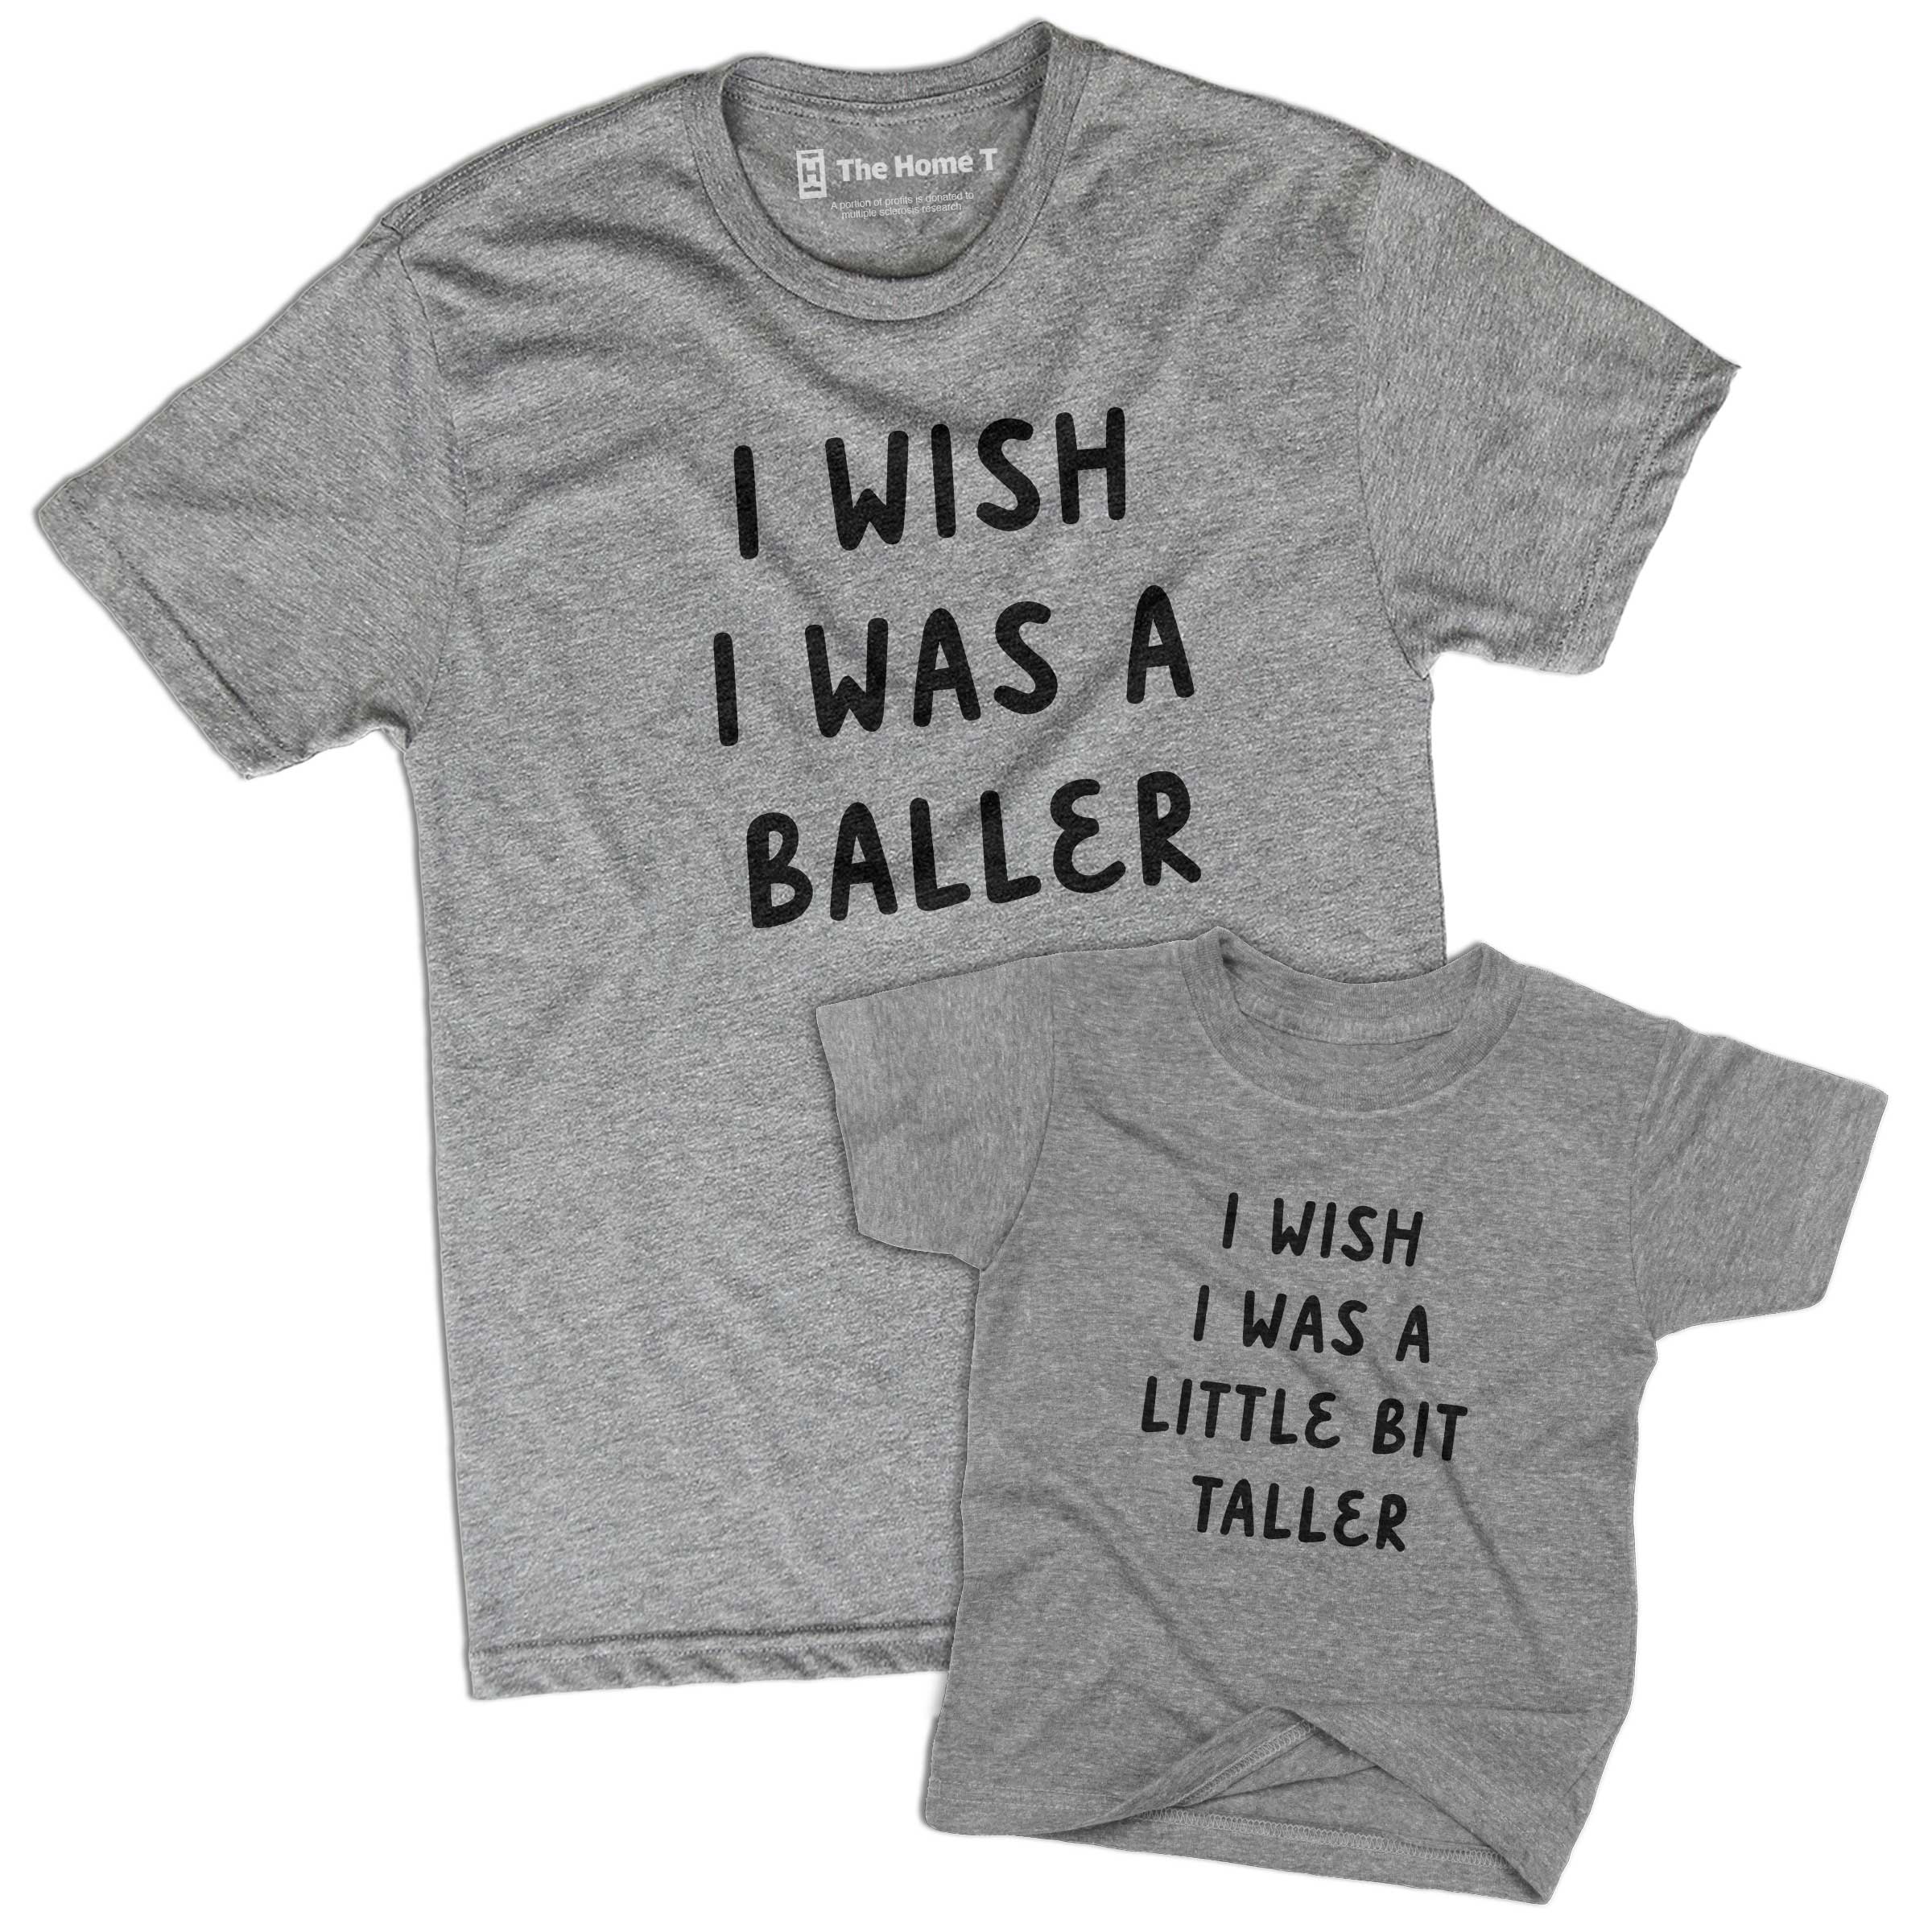 Taller Baller (Matching Set)